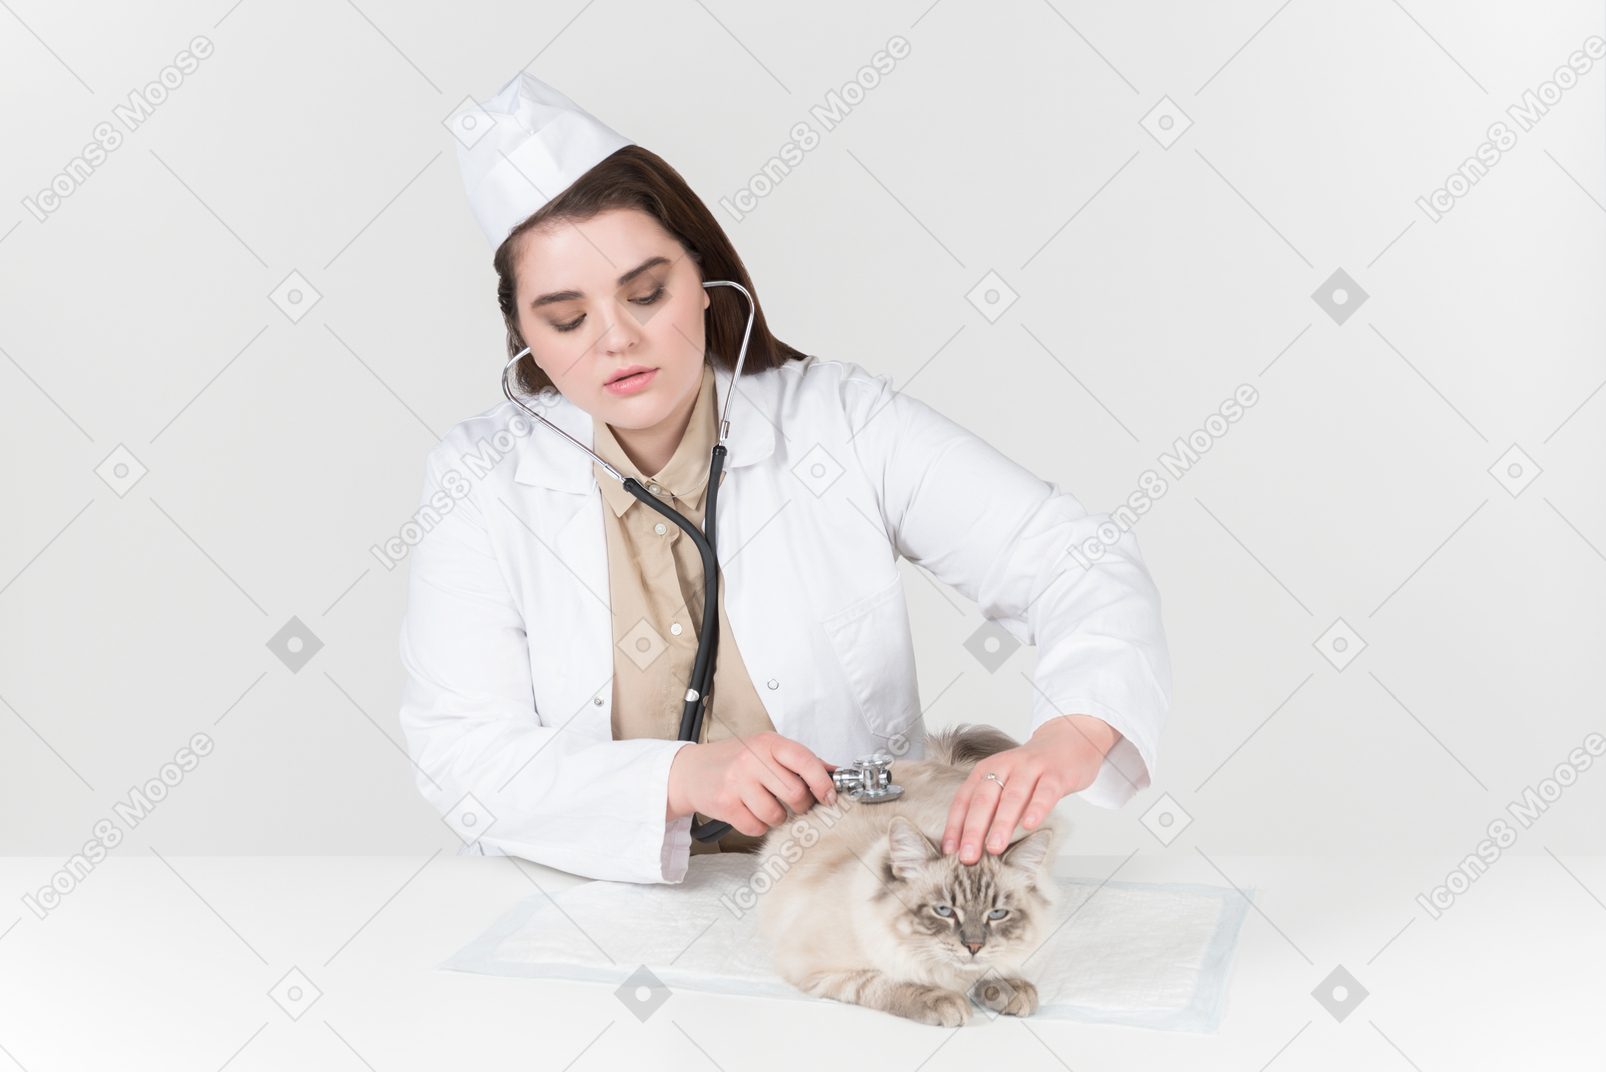 Jeune chat écoute femme avec un stéthoscope